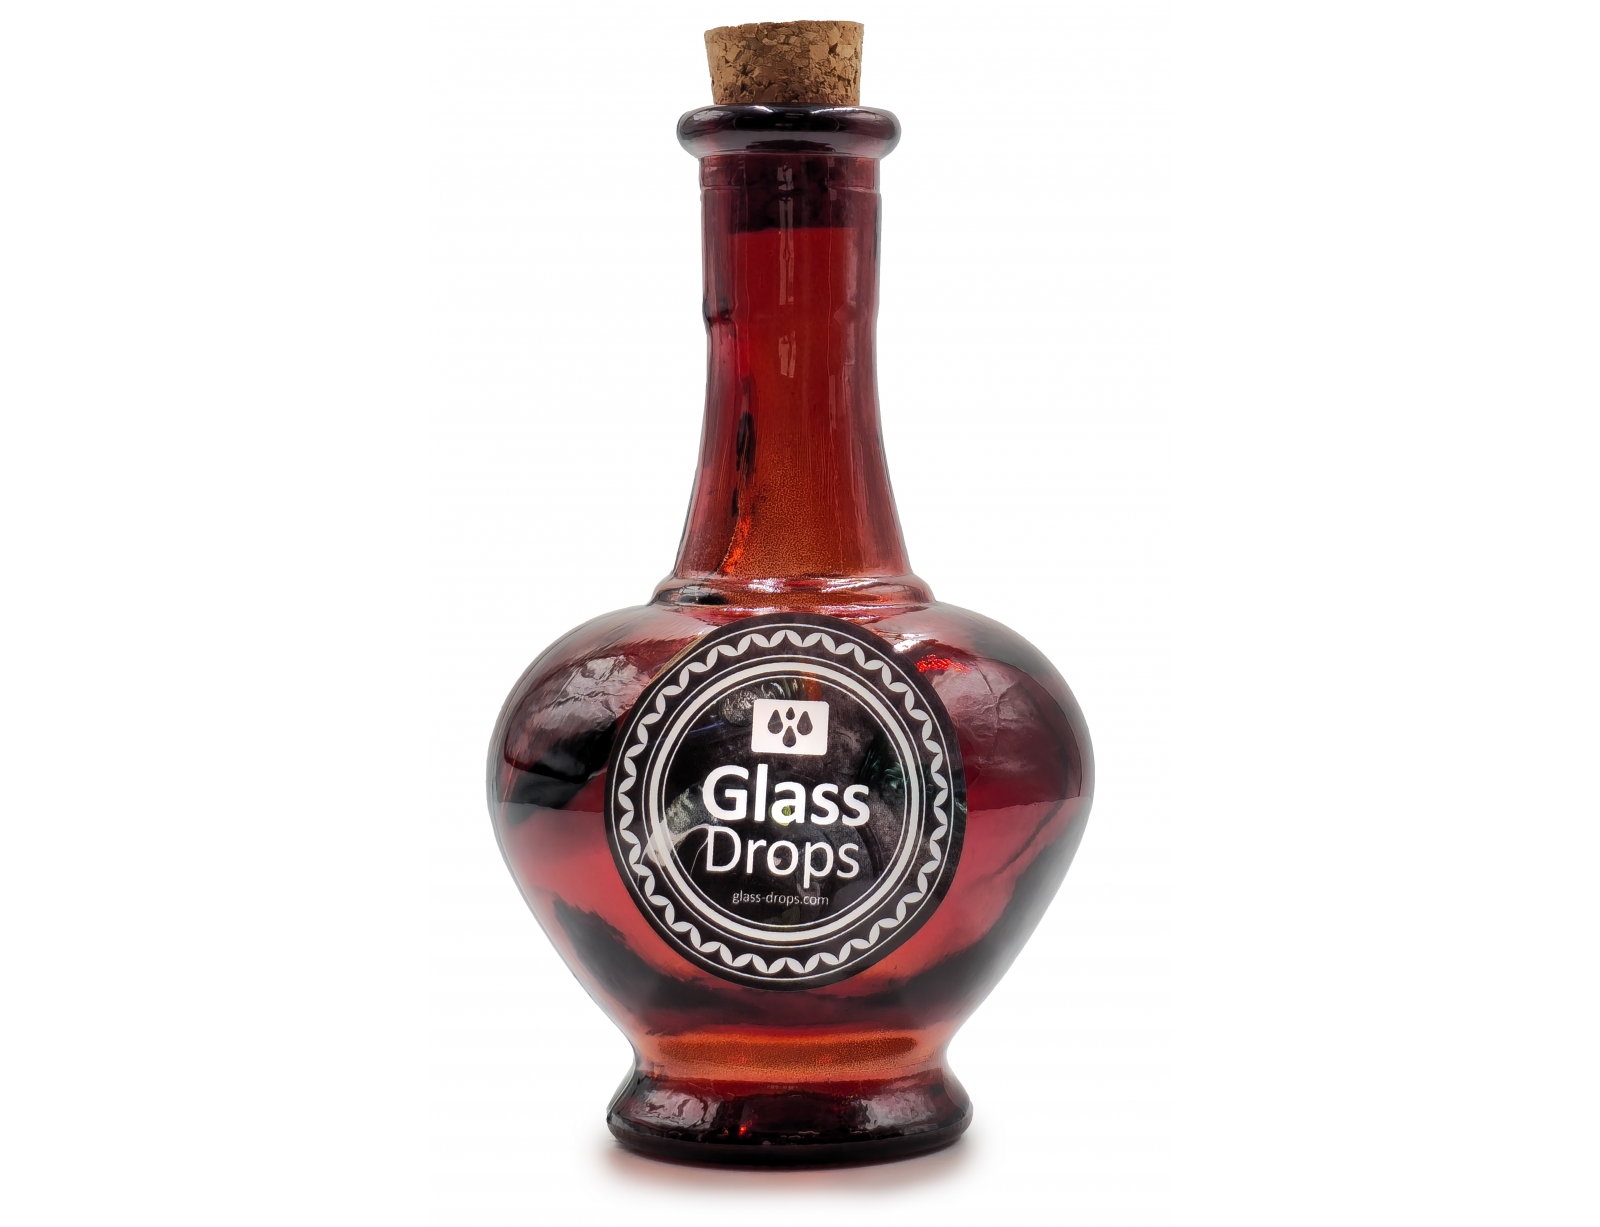 Εικόνα Διακοσμητικό Μπουκάλι με πώμα Glass Drops Navarra (5622DB738) Aπό 100% ανακυκλωμένο γυαλί, Xωρητικότητας 250ml, Διαστάσεων Ø 9 x Υ 15 cm, Terracotta